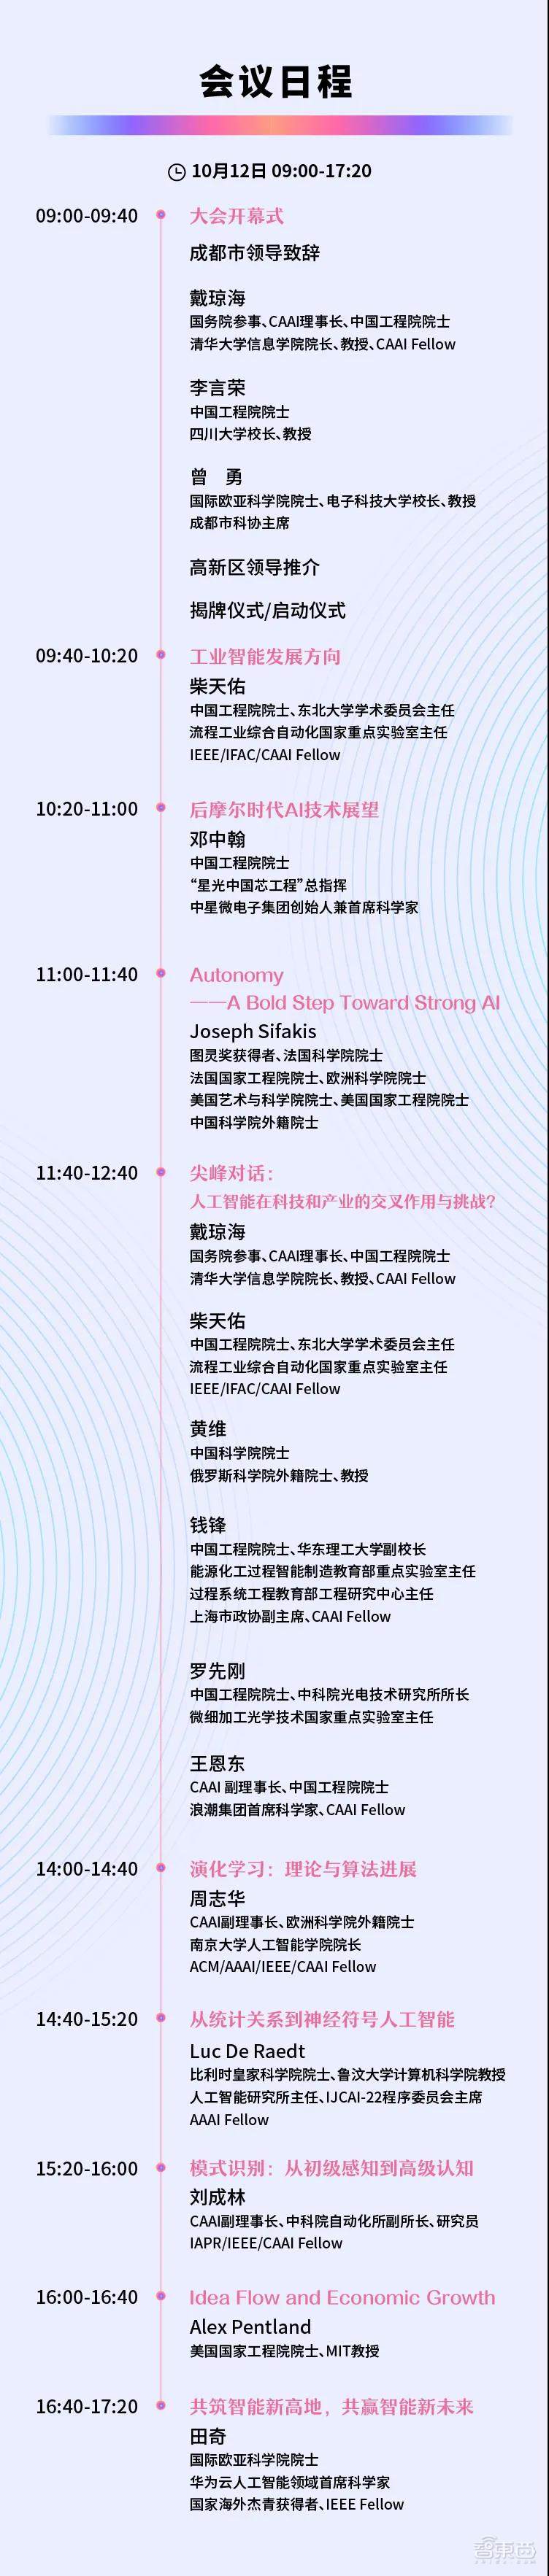 2021中国人工智能大会将于10月12-13日在成都高新区举办